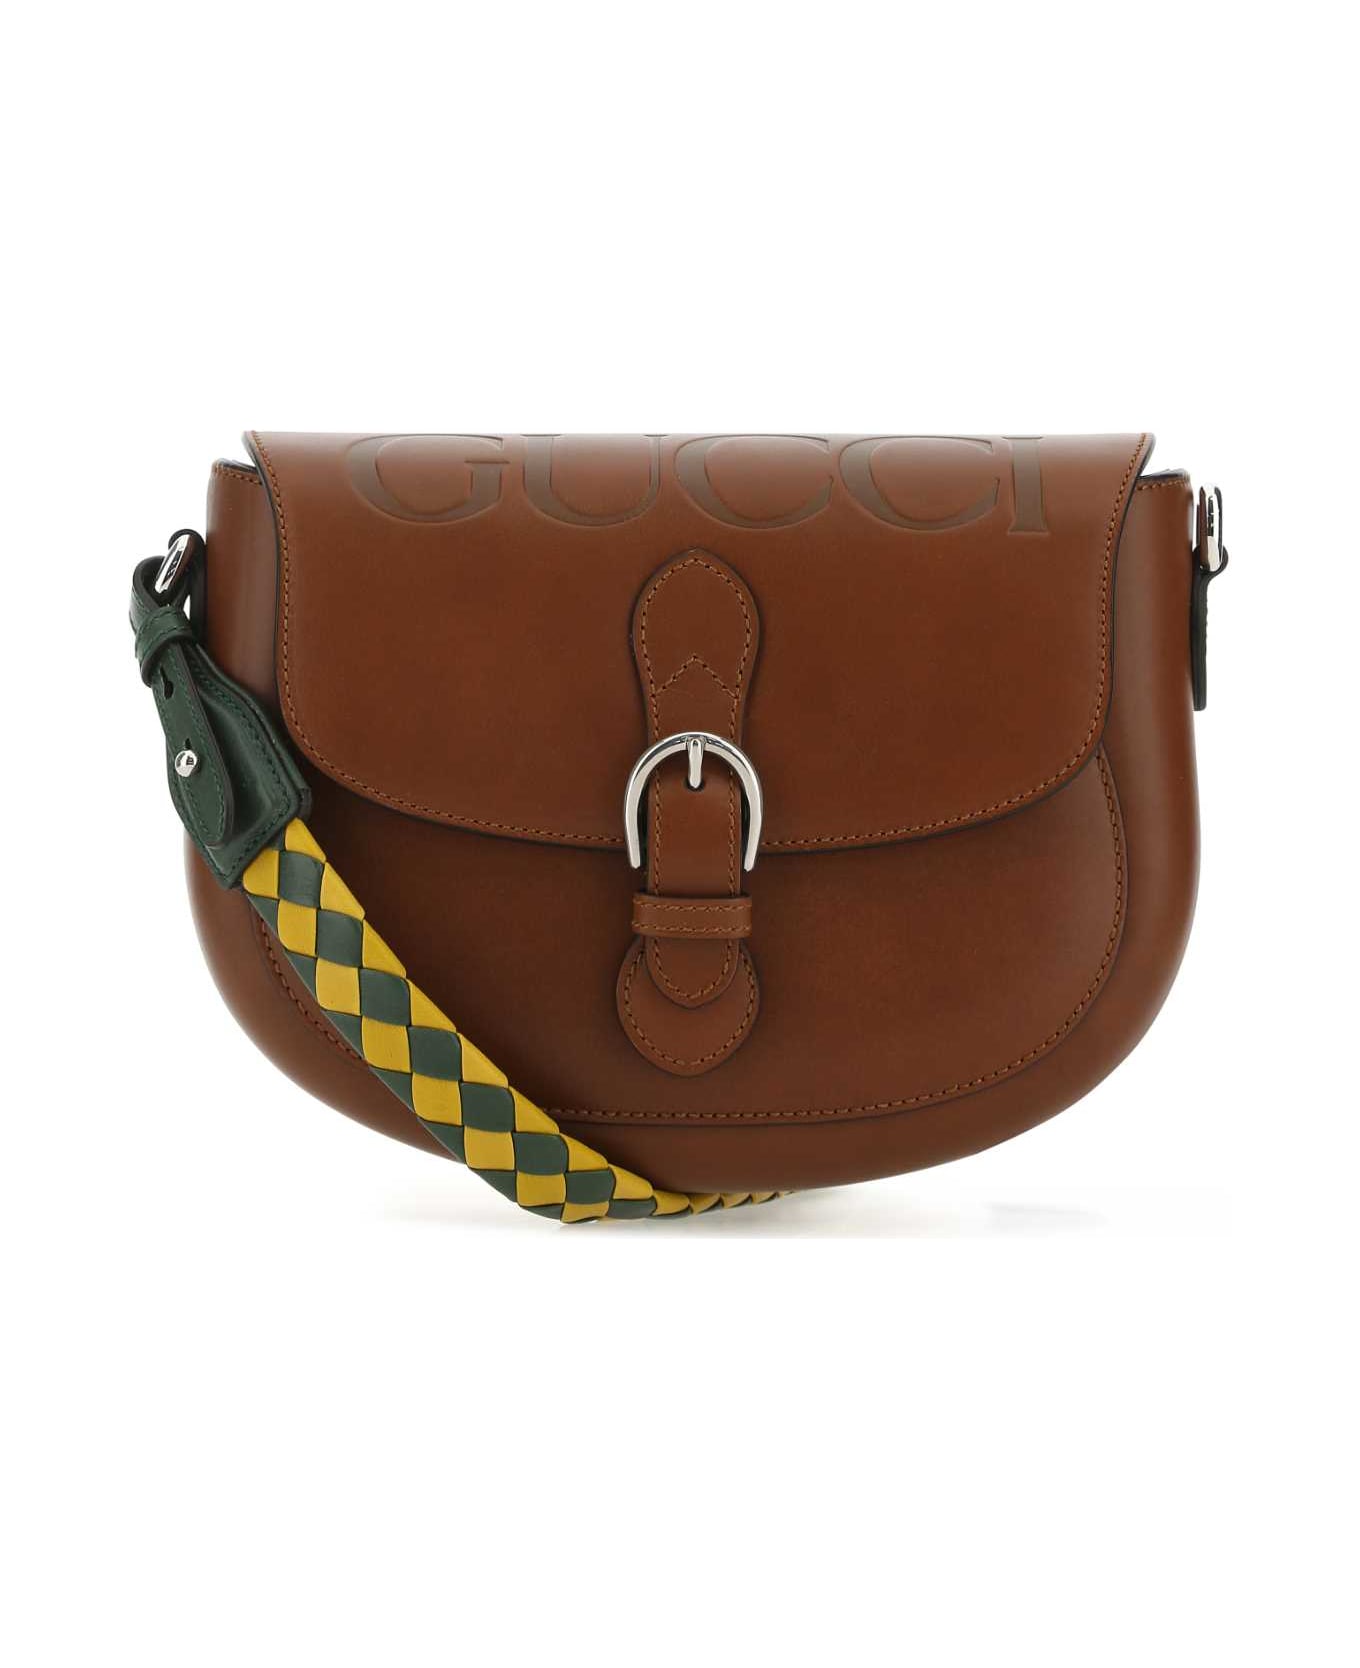 Gucci Brown Leather Shoulder Bag - 2598 トートバッグ